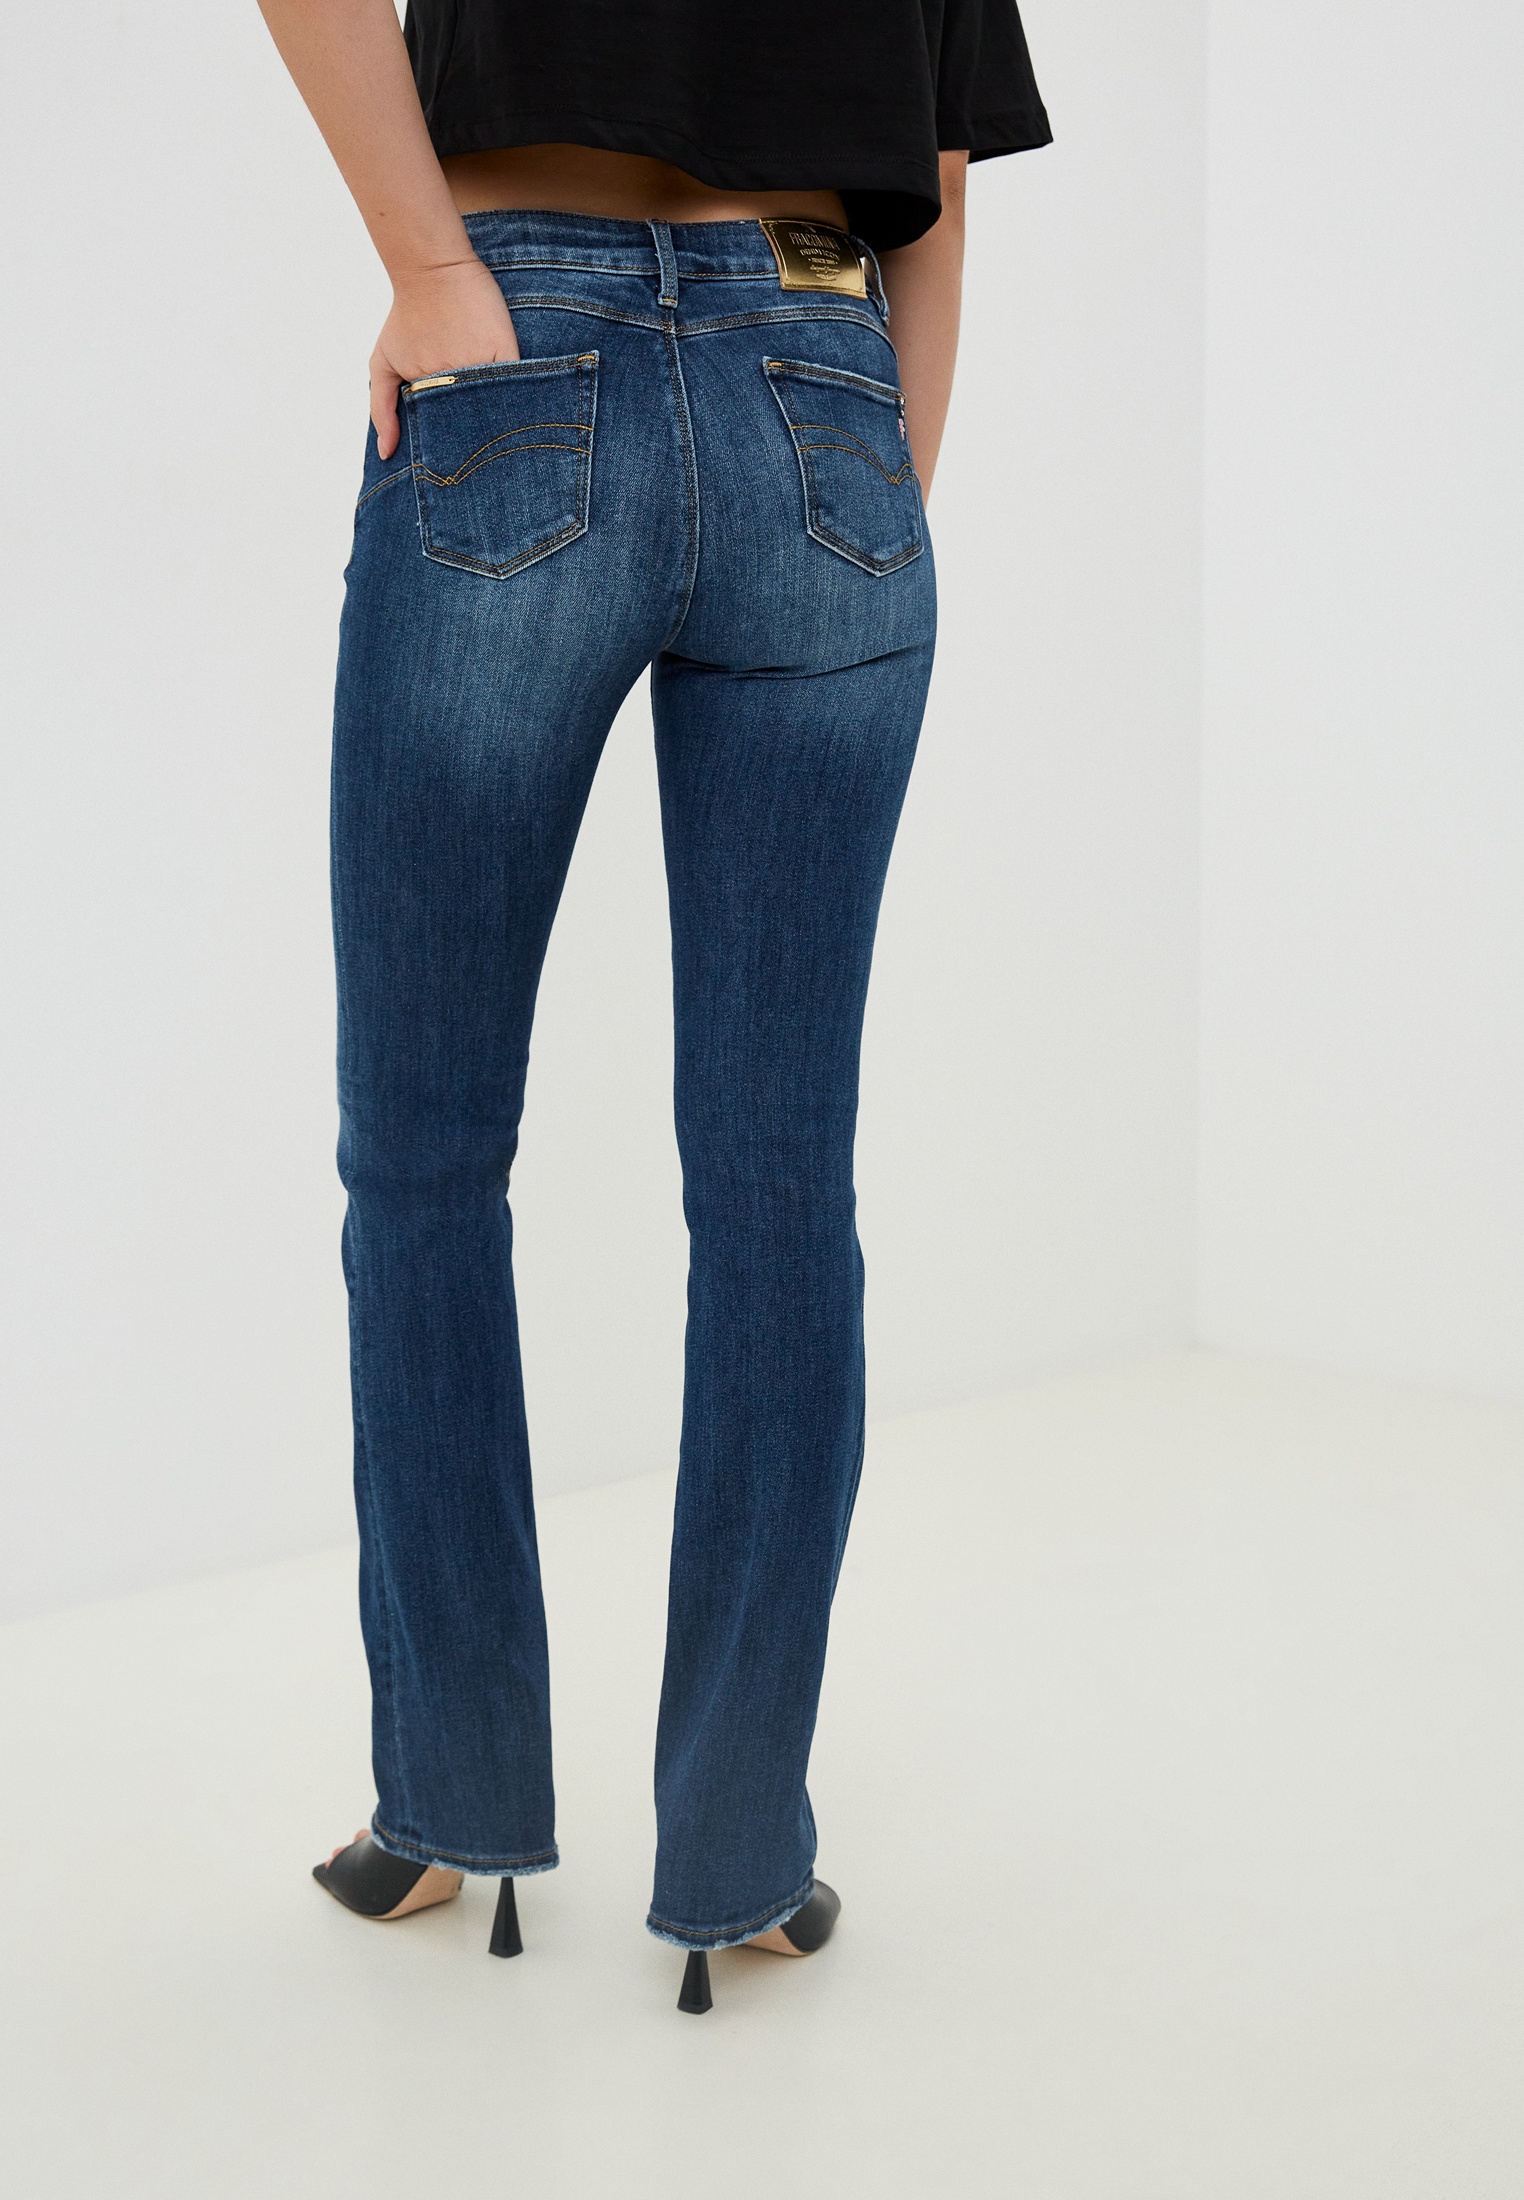 Широкие и расклешенные джинсы Fracomina FP23WV8020D40102: изображение 3